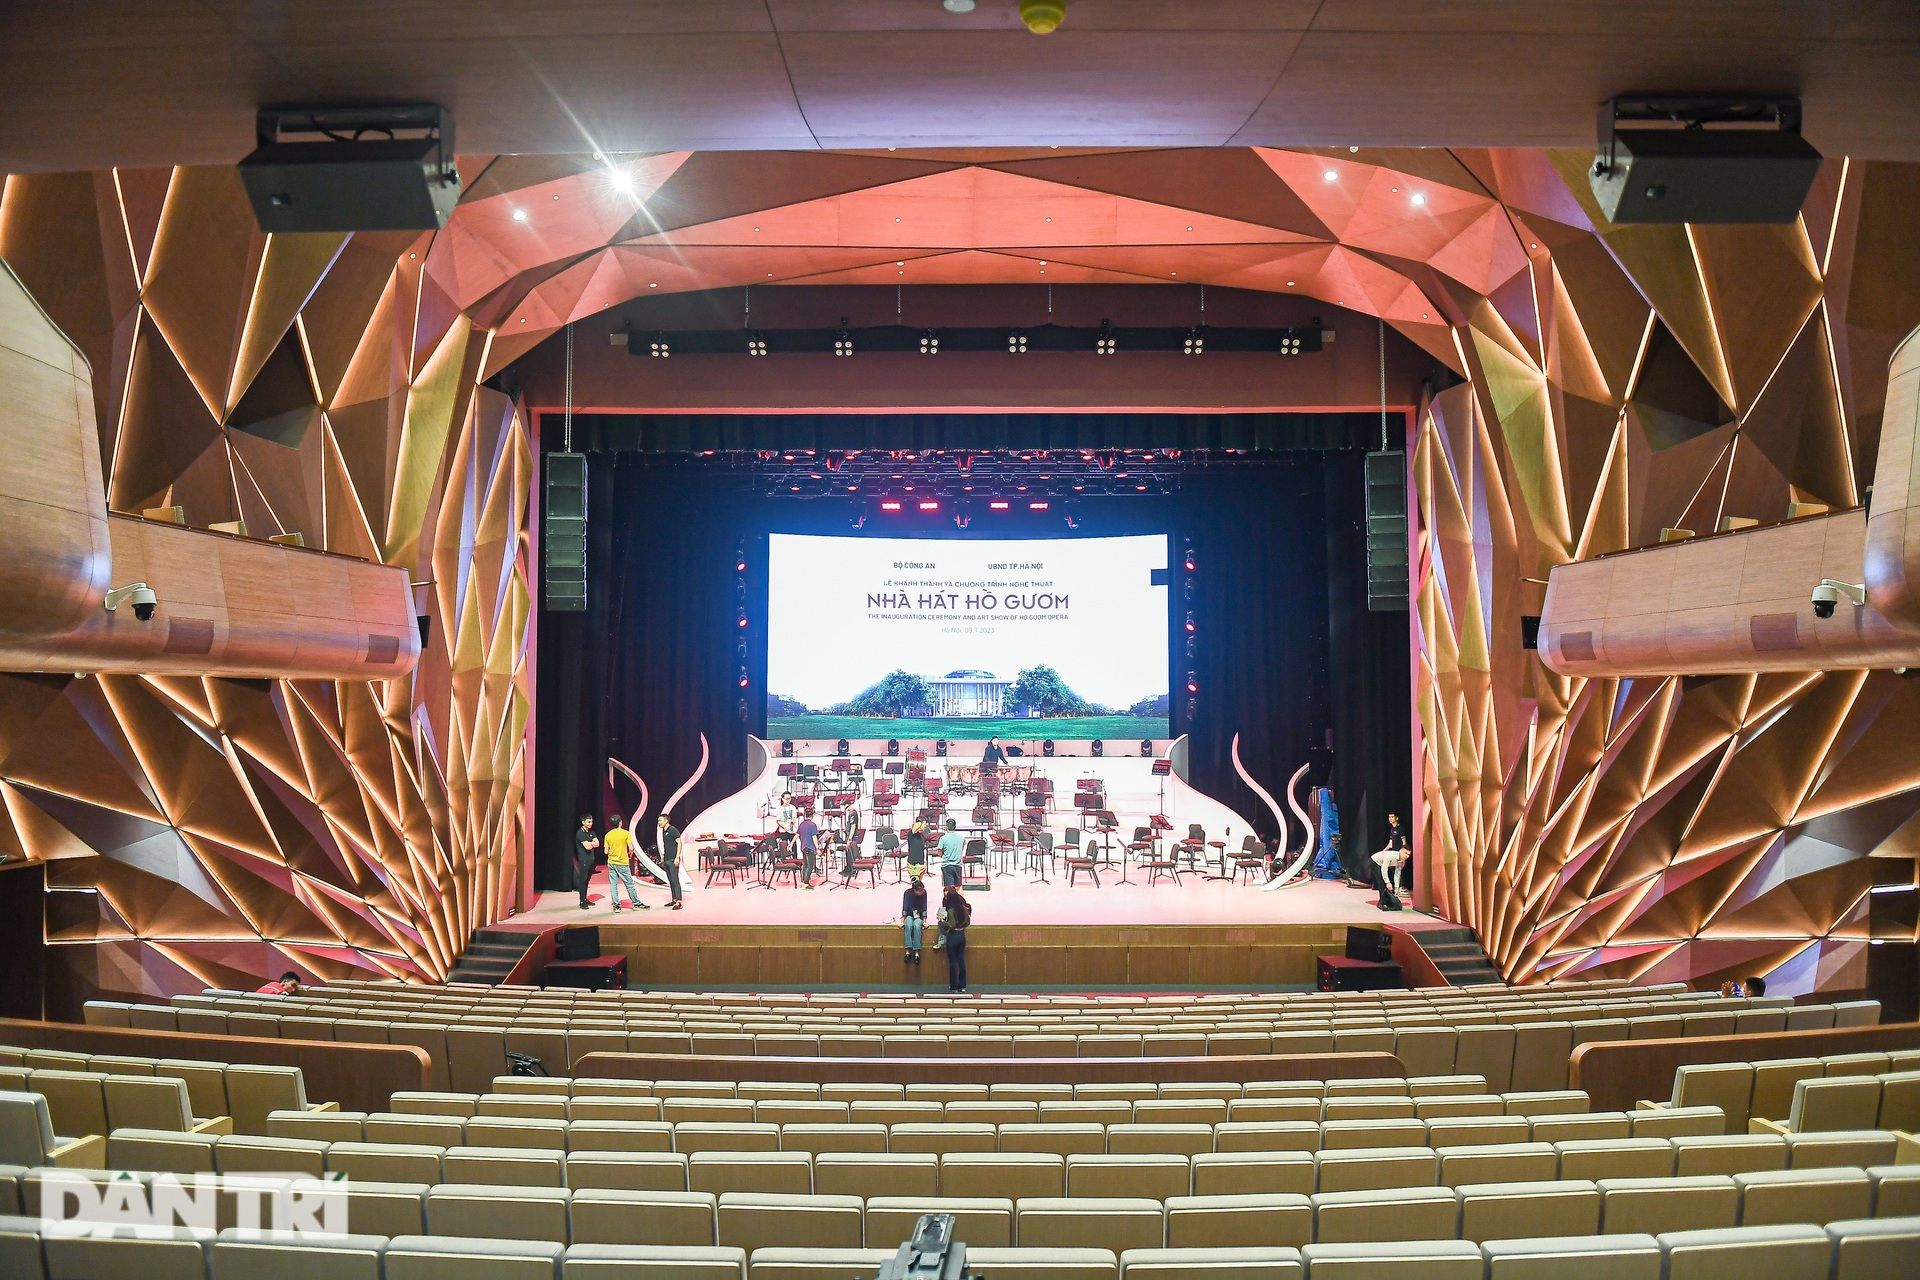 Ông Dương Trung Quốc: Kỳ vọng Nhà hát Hồ Gươm sẽ trở thành một di sản - 2